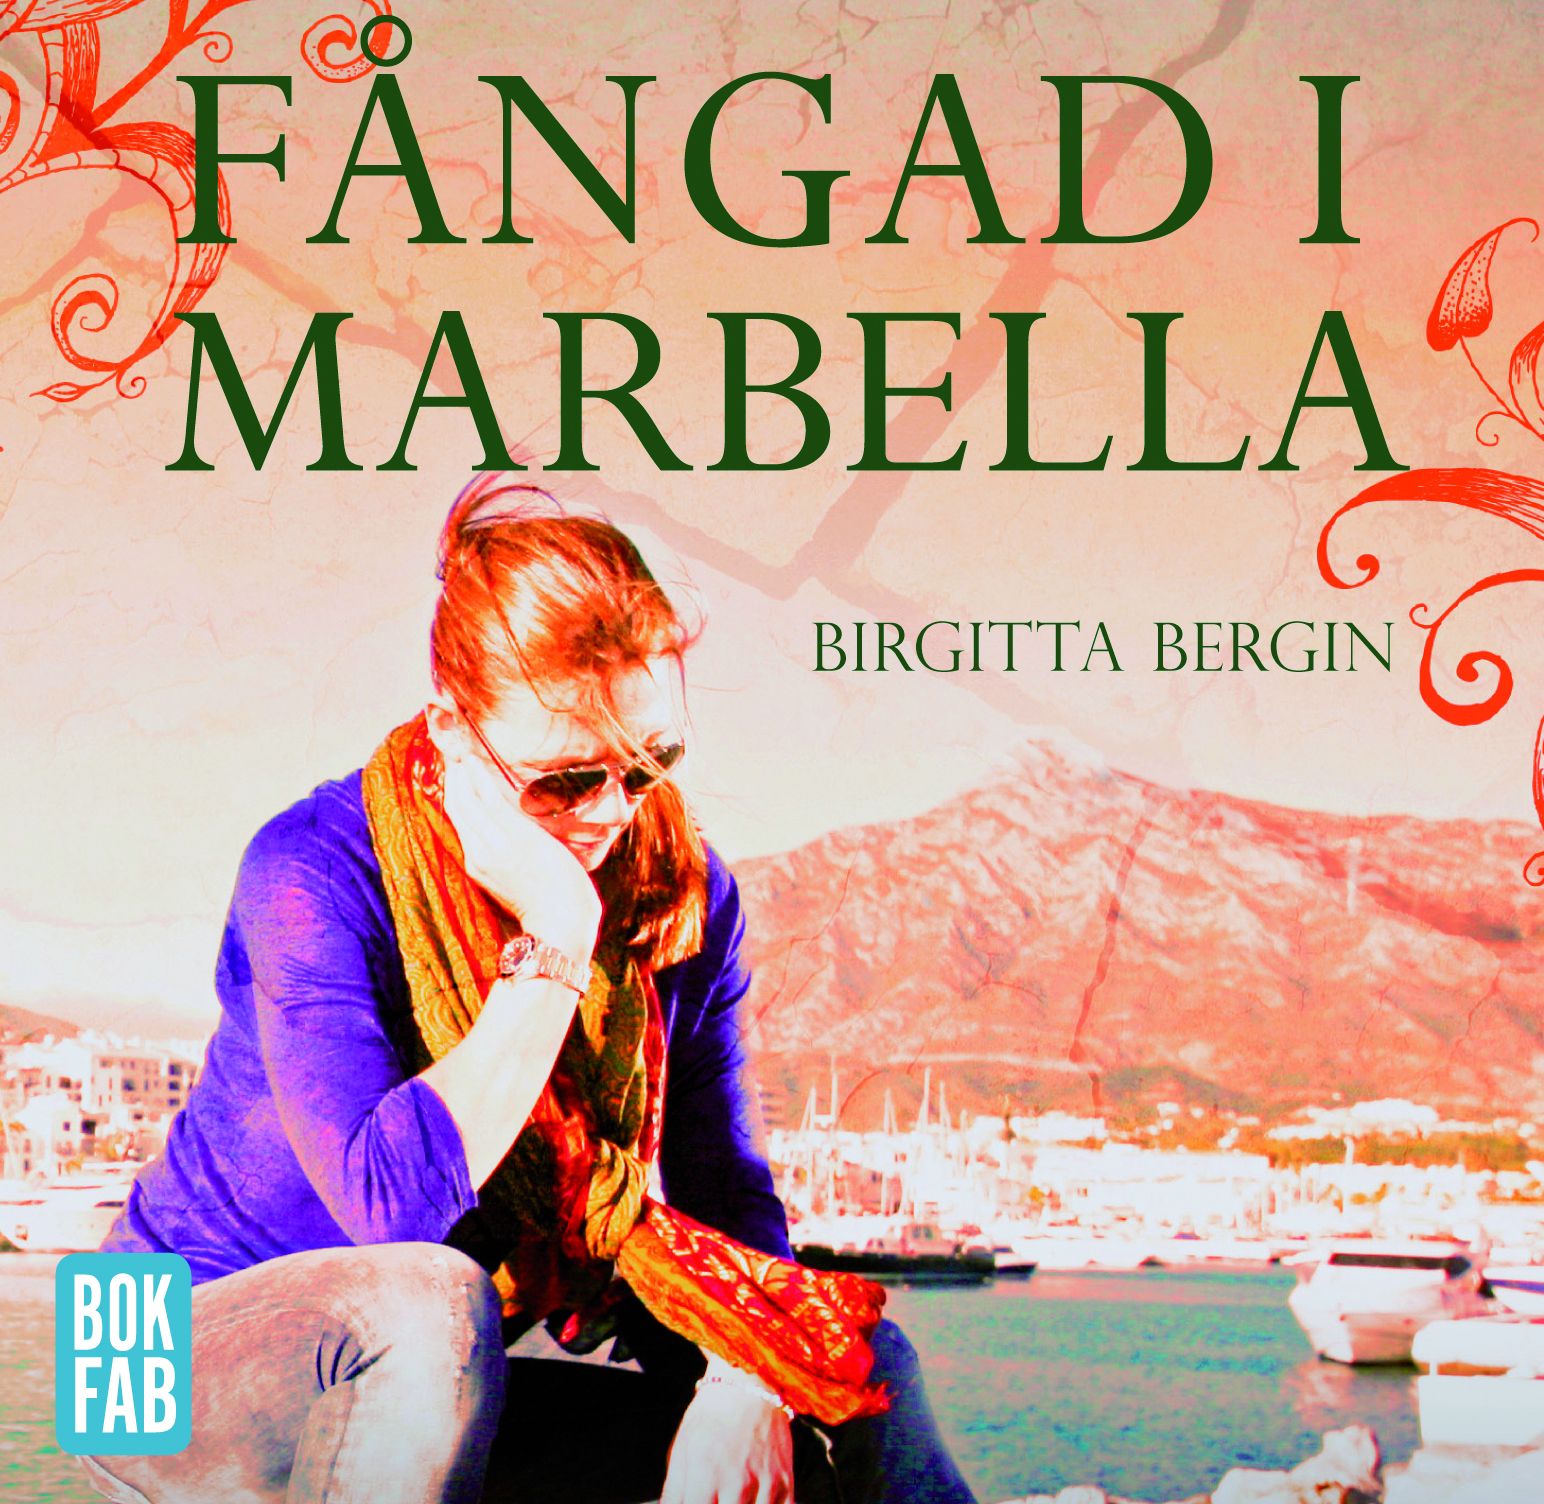 Fångad i Marbella, ljudbok av Birgitta Bergin